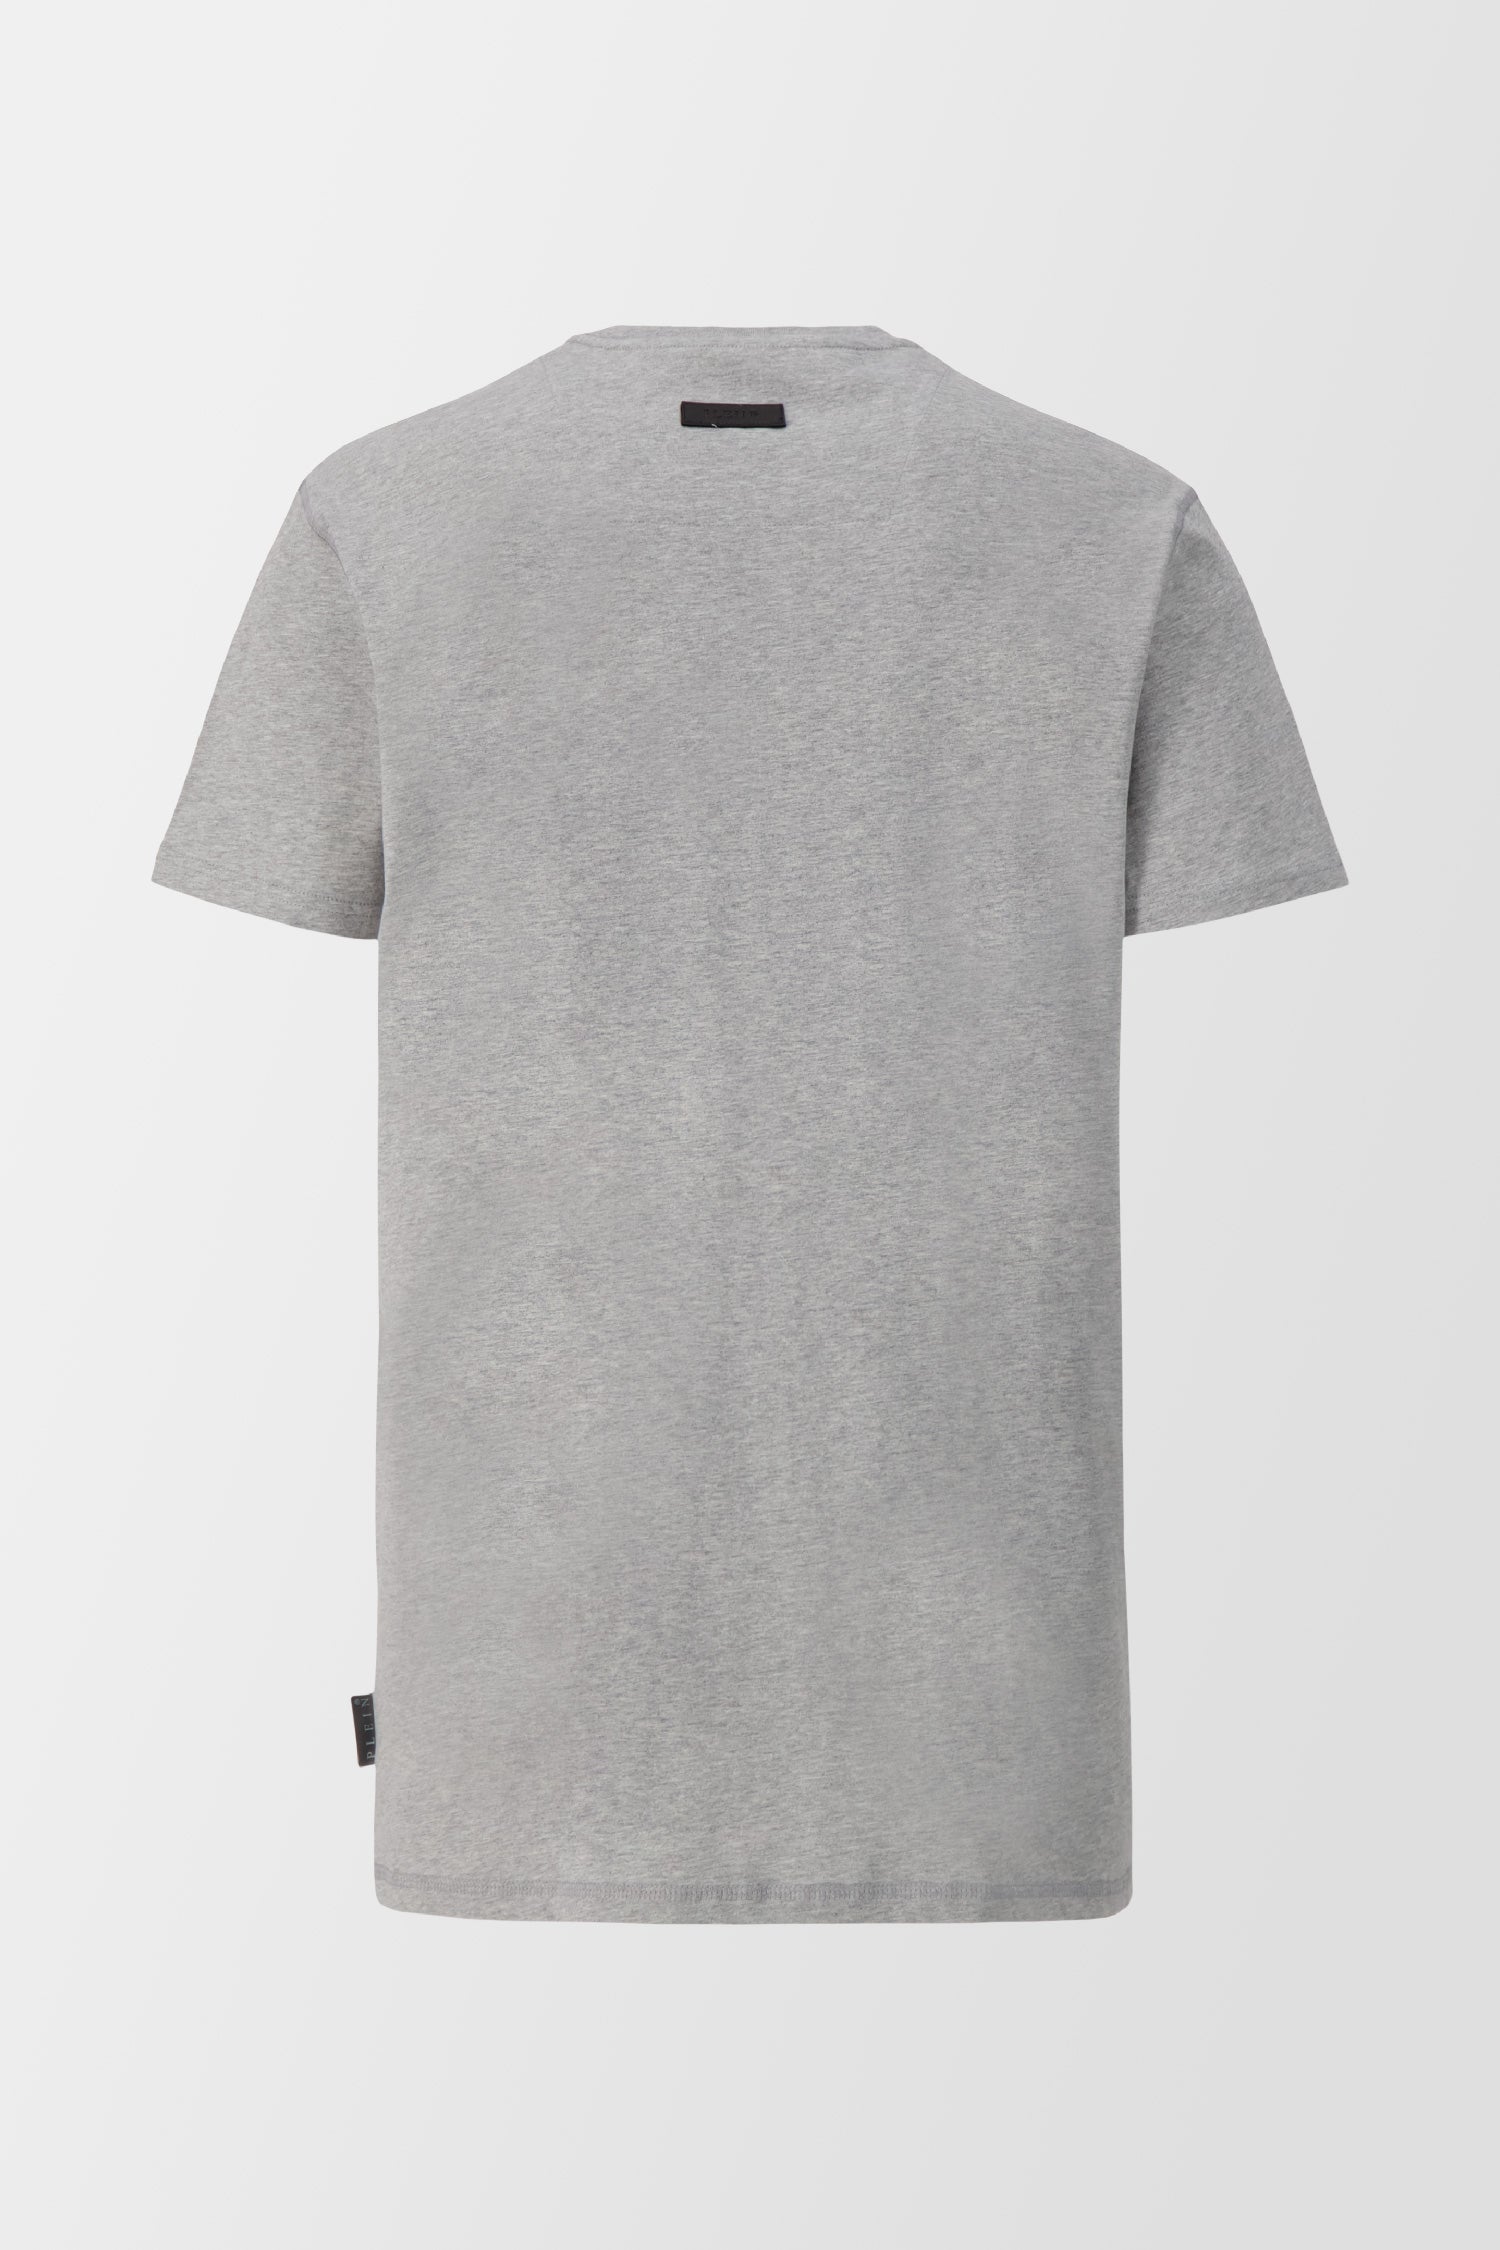 Philipp Plein Grey Round Neck SS Iconic Plein T-Shirt